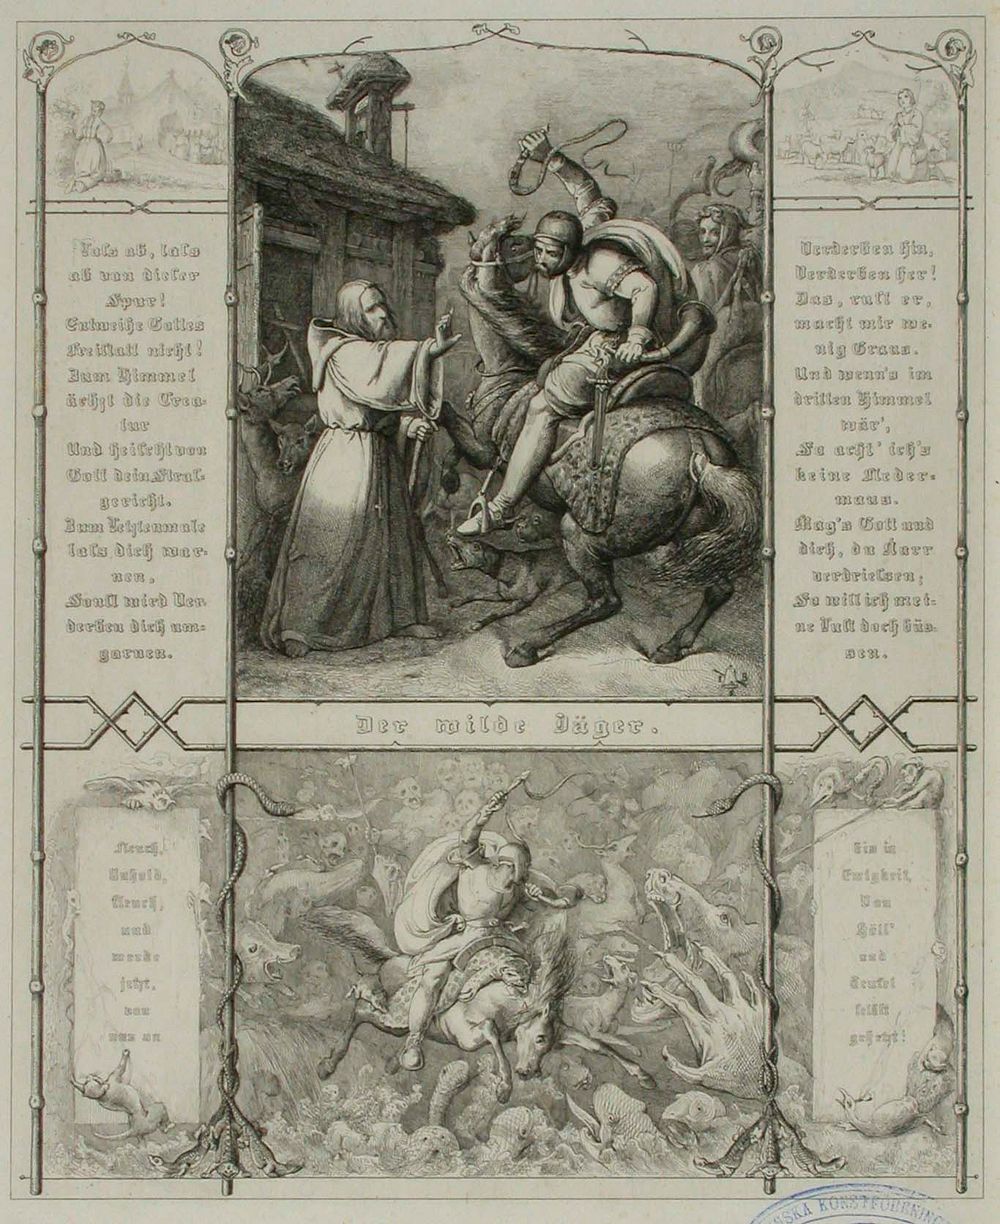 Runokuvitus, der wilde jäger, 1838 - 1844